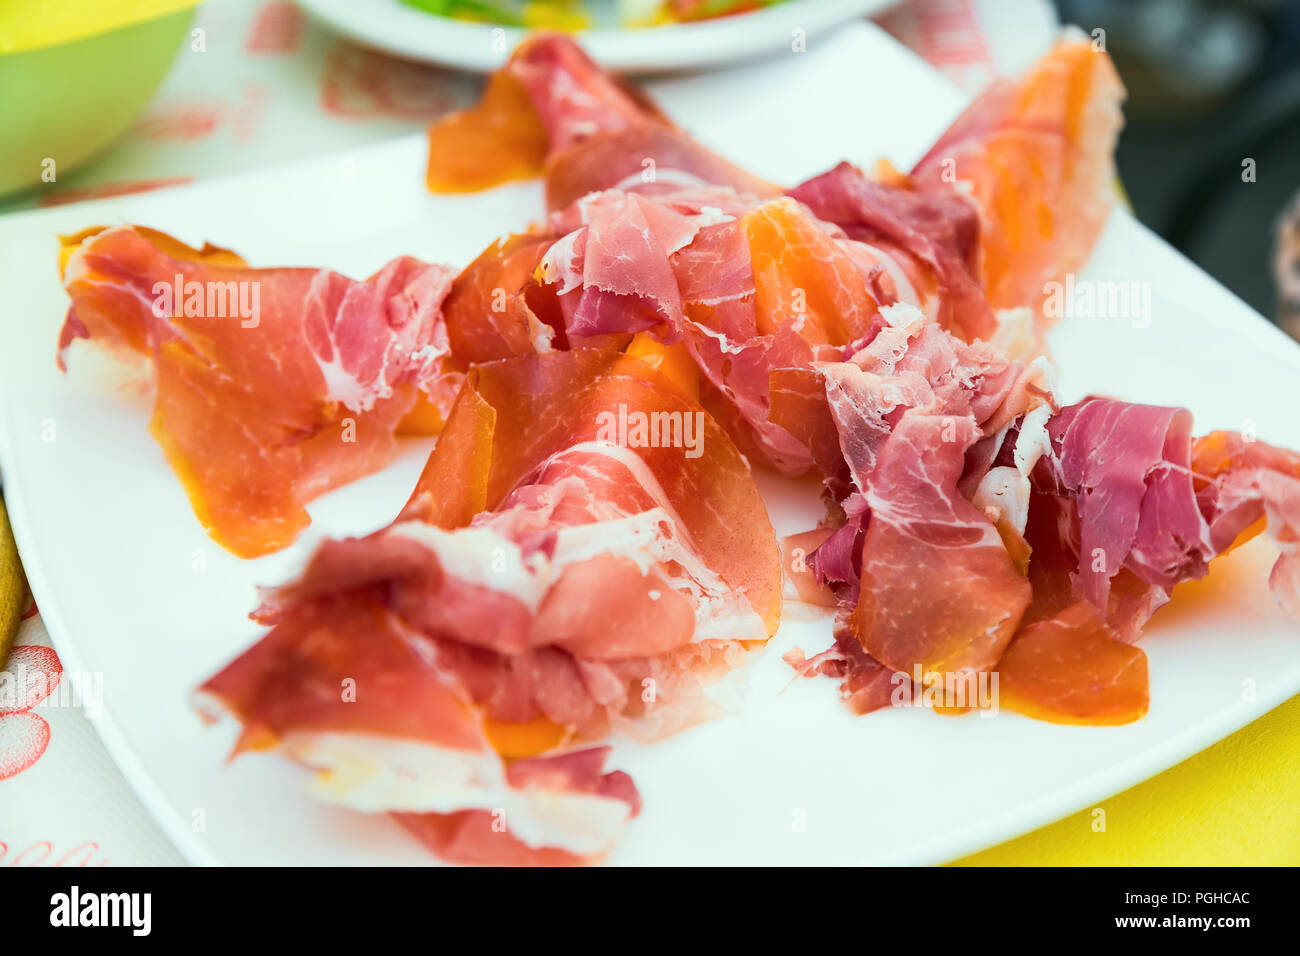 Prosciutto e melone - squisiti antipasti italiani nella piastra bianca sul tavolo Foto Stock